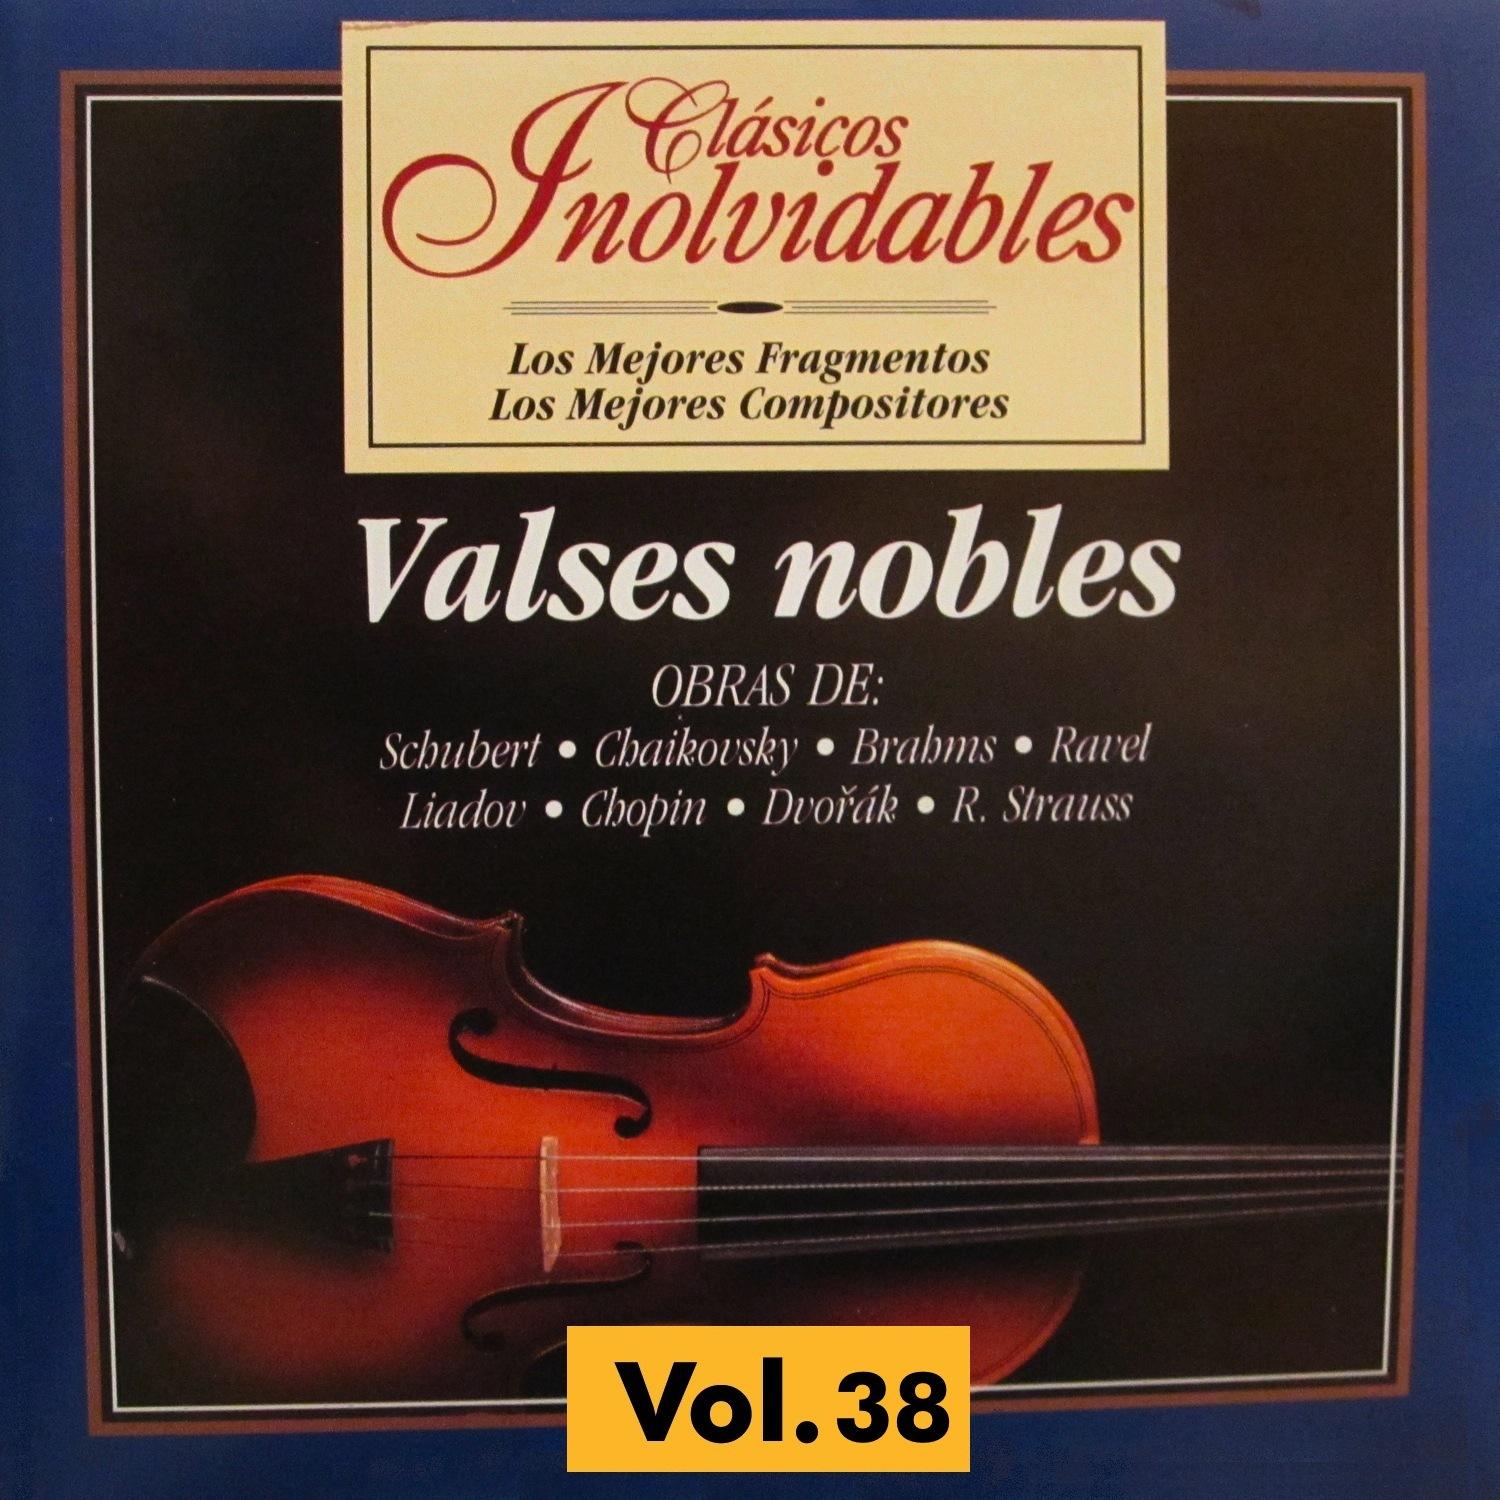 Clásicos Inolvidables Vol. 38, Valses Nobles